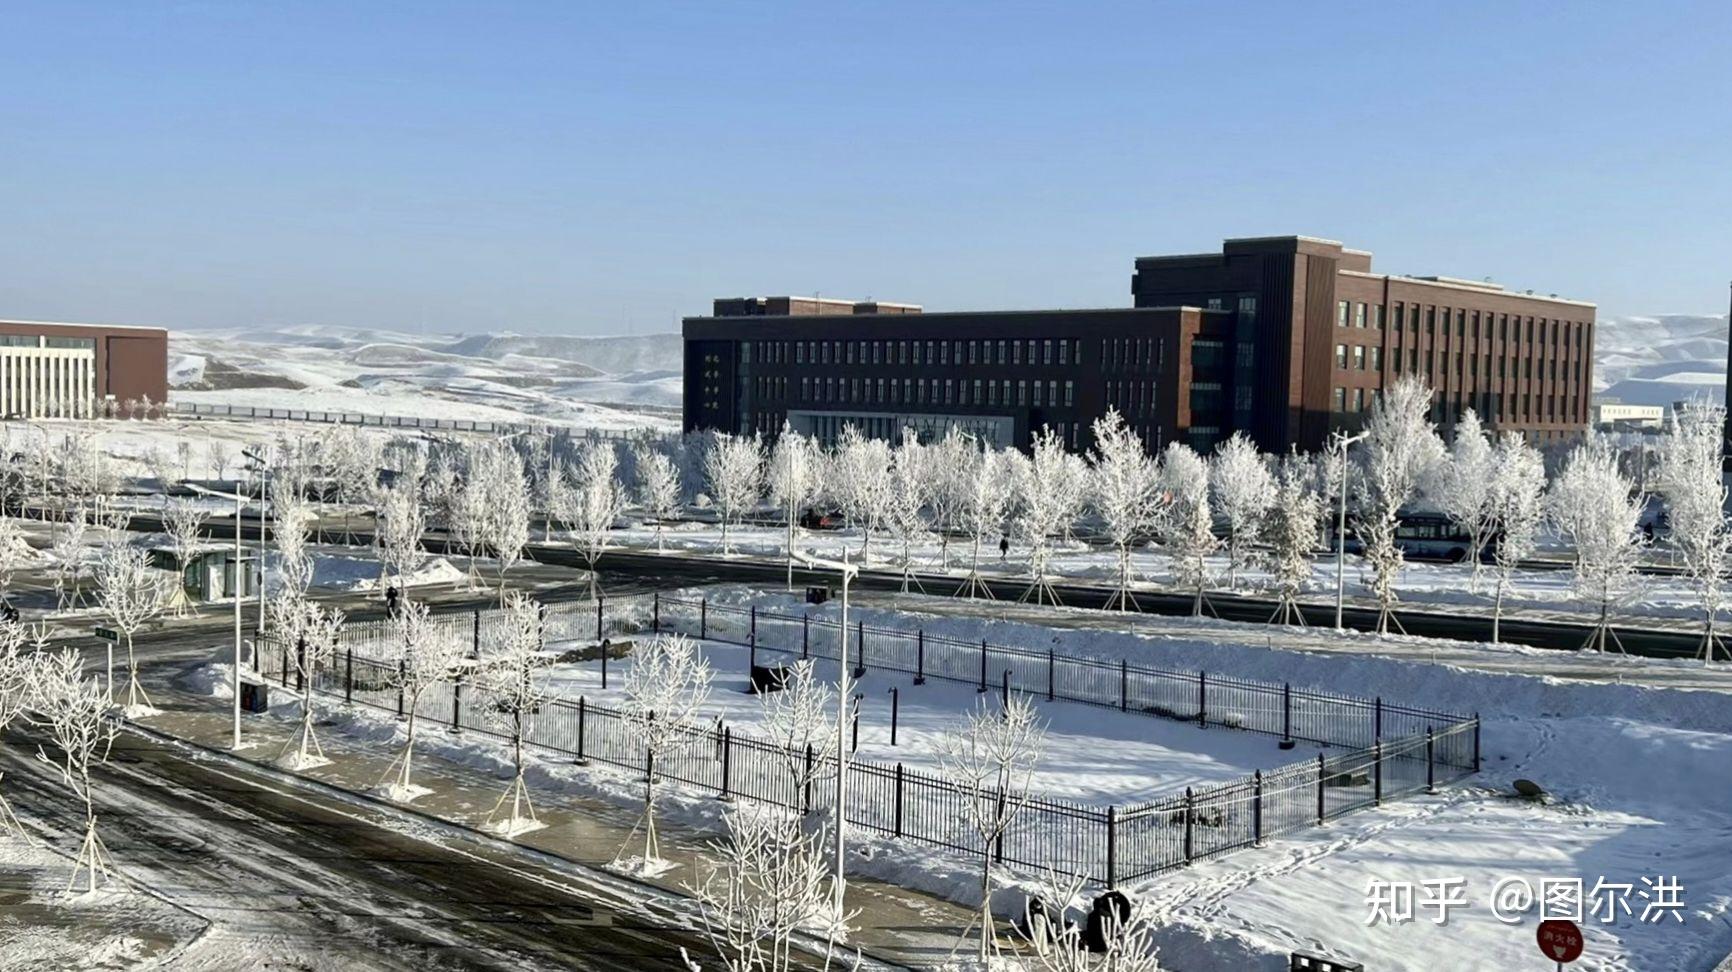 新疆大学新校区可以有多好看?宿舍条件如何? 